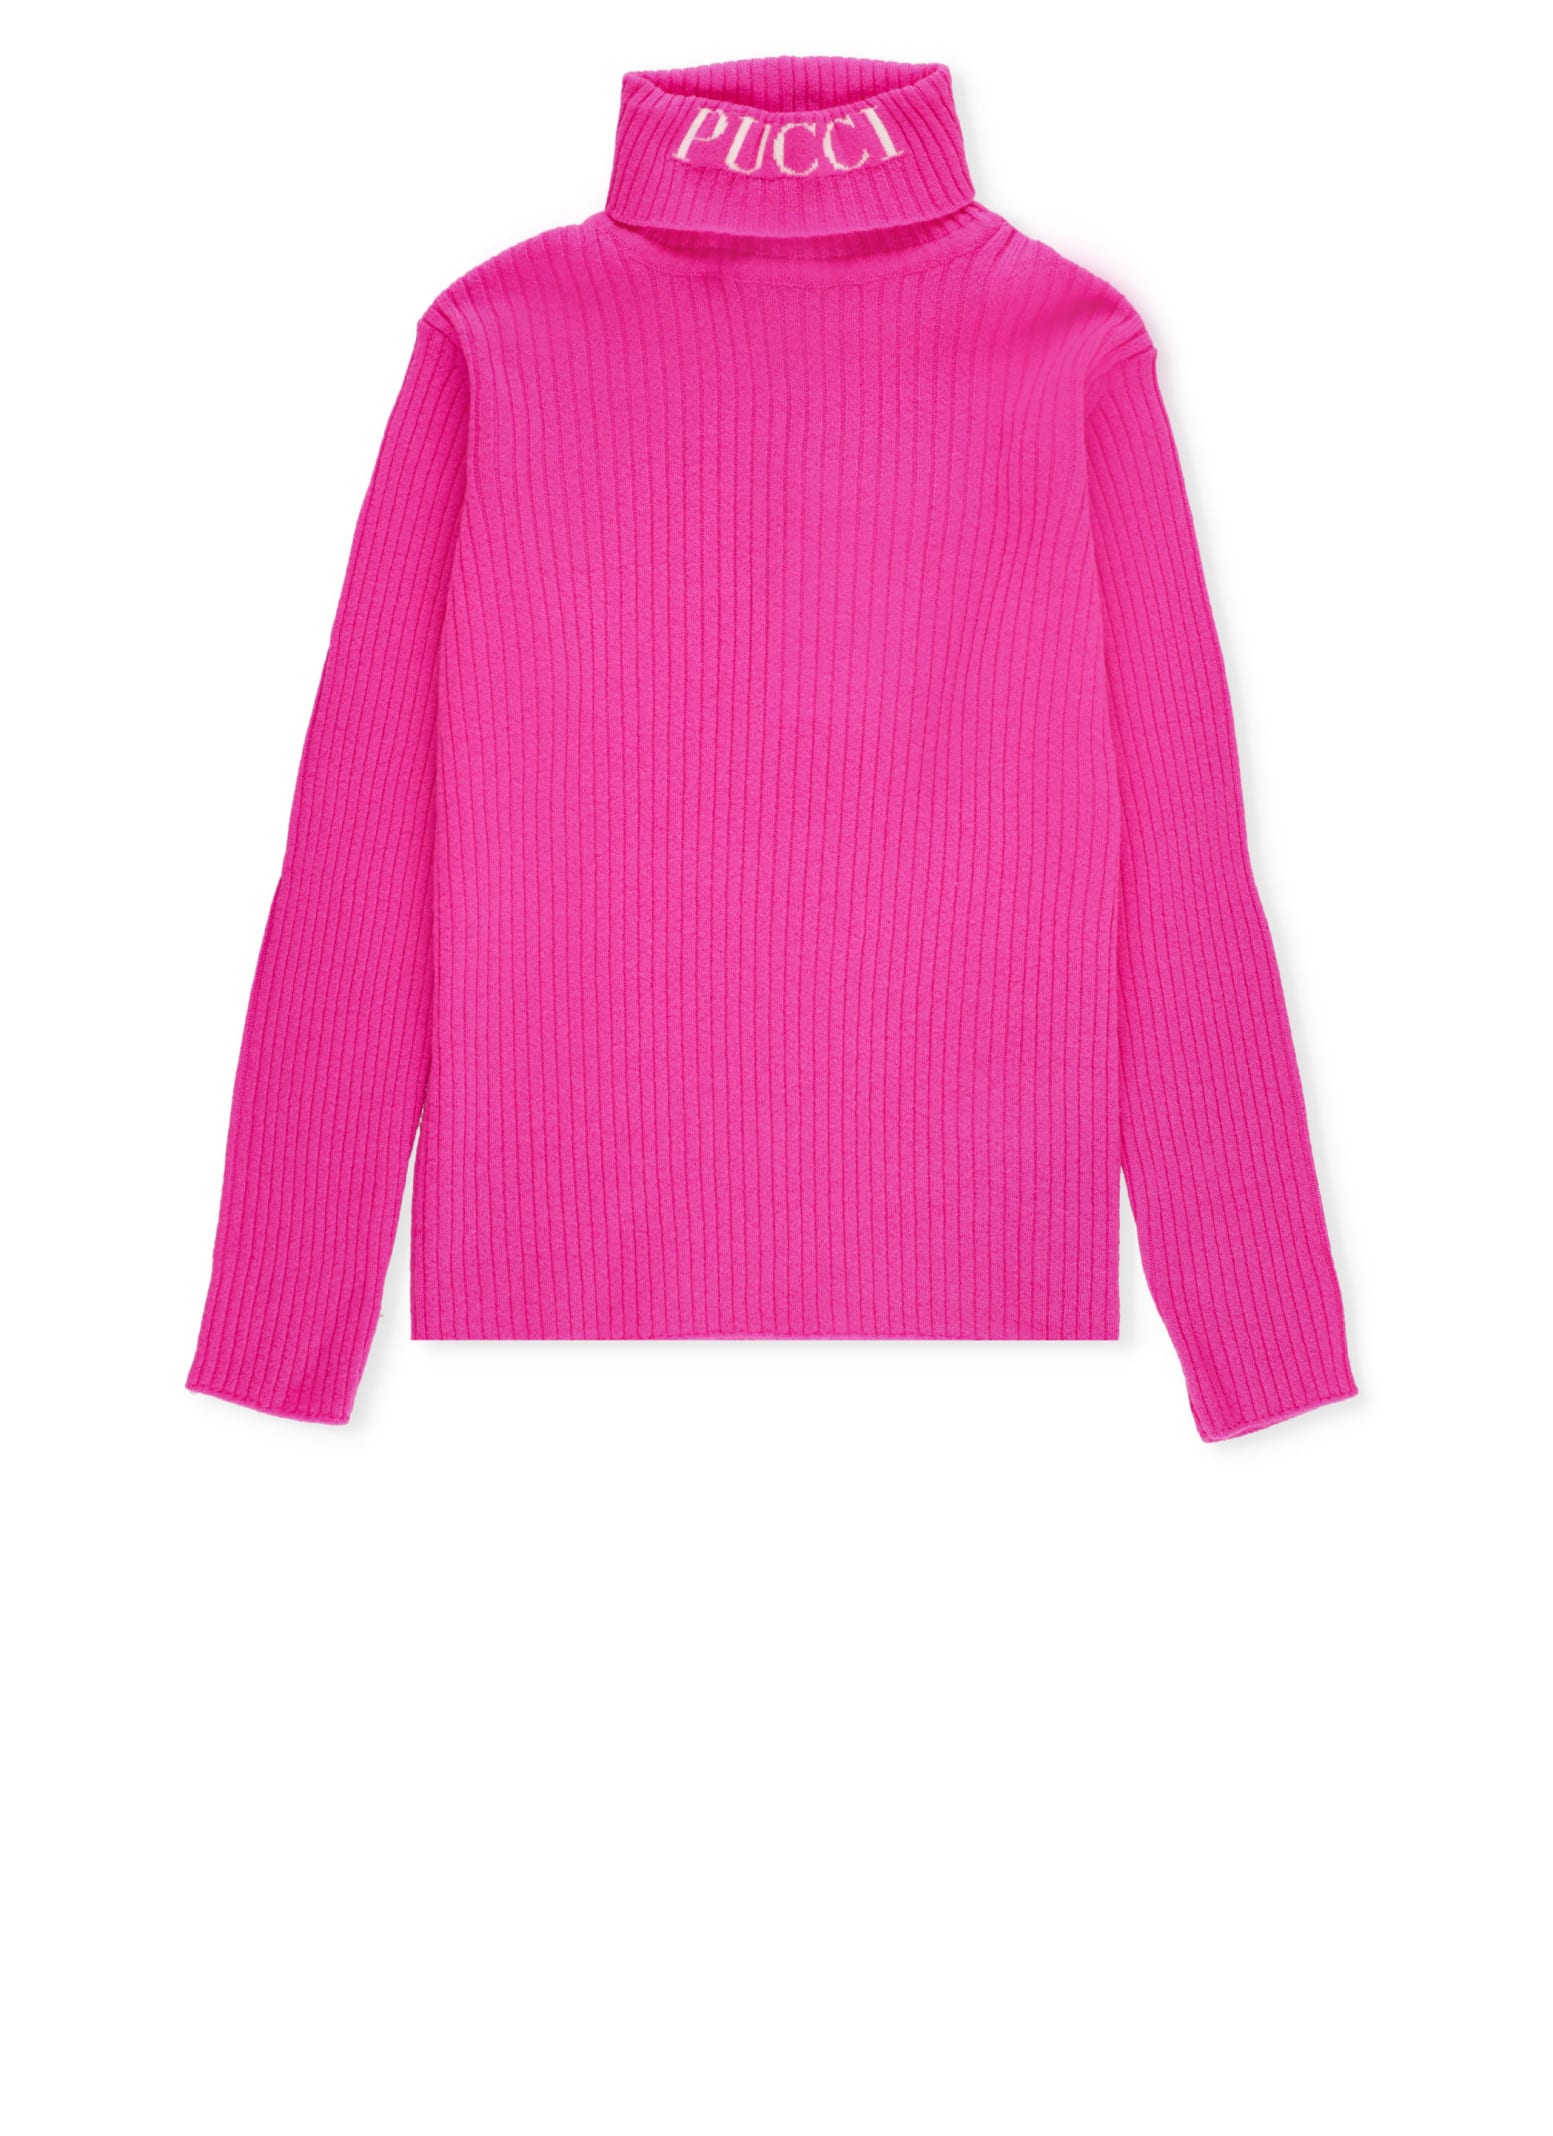 Pucci Kids' Wool Sweater In Fuchsia